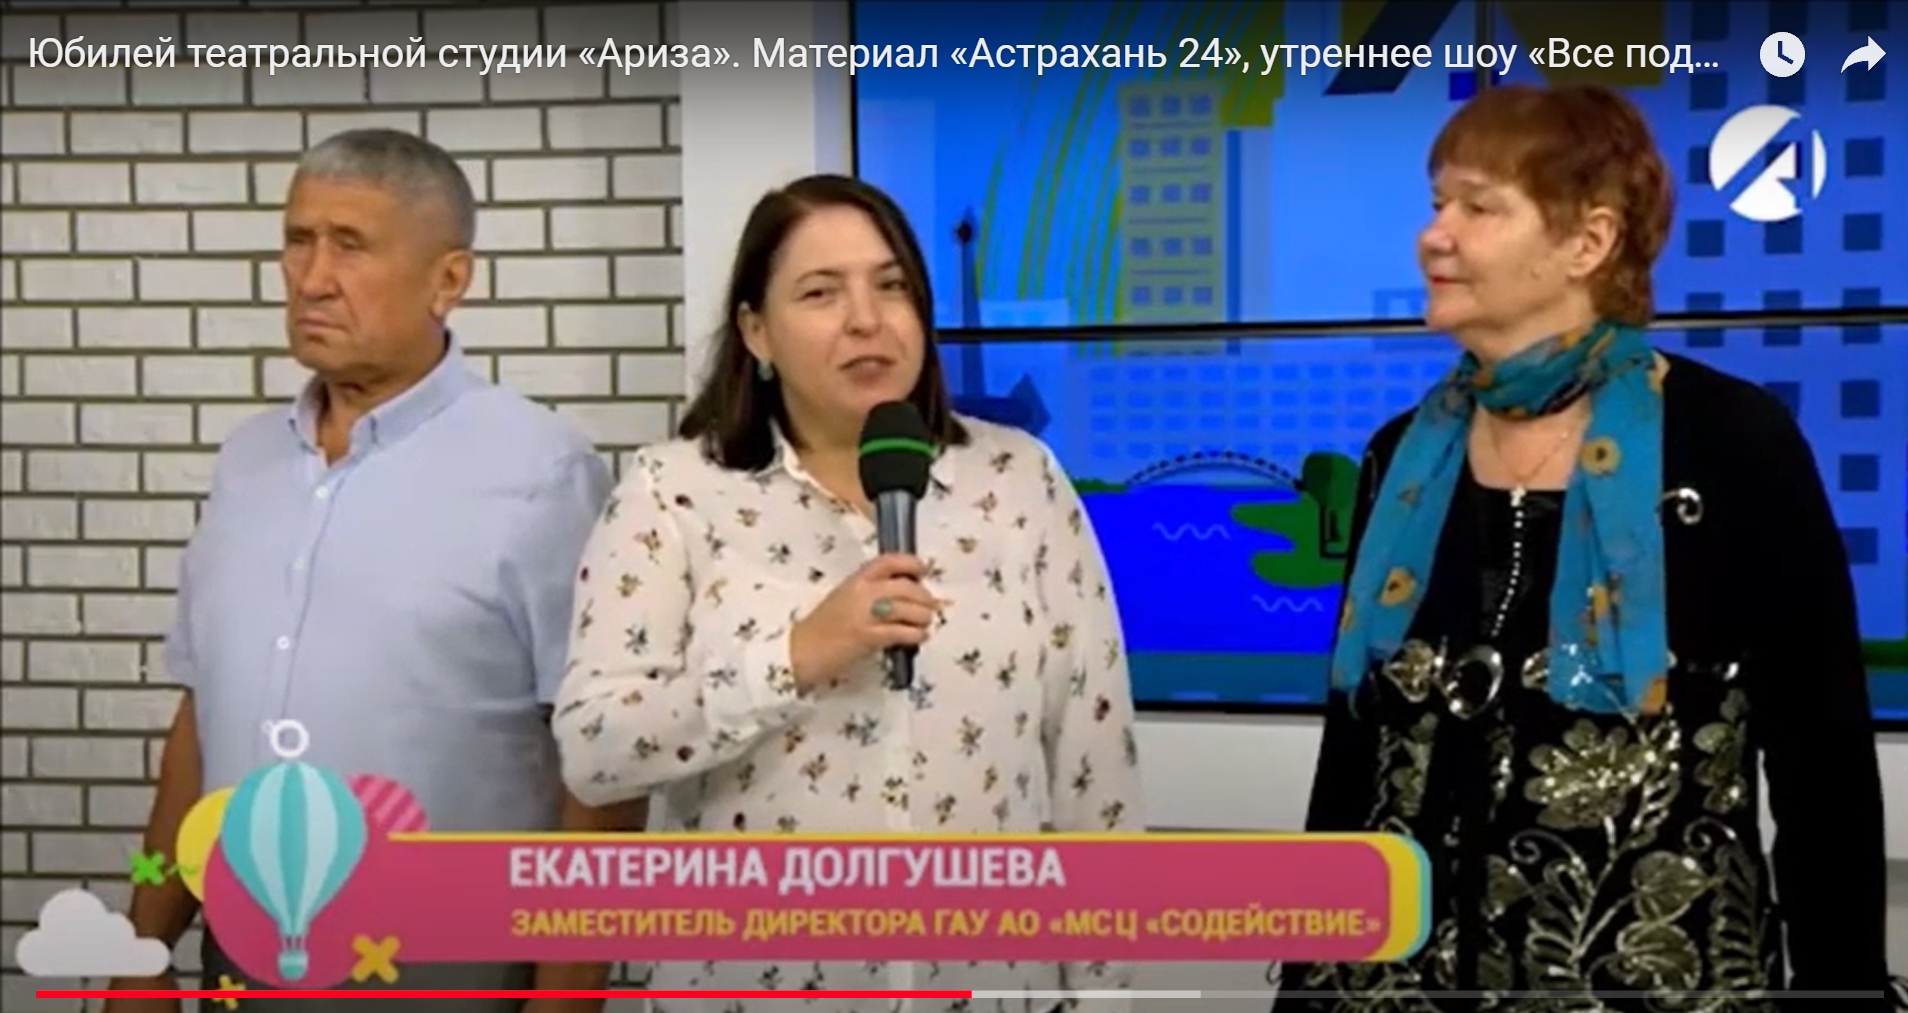 Материал «Астрахань 24», утреннее шоу «Все подъём!»